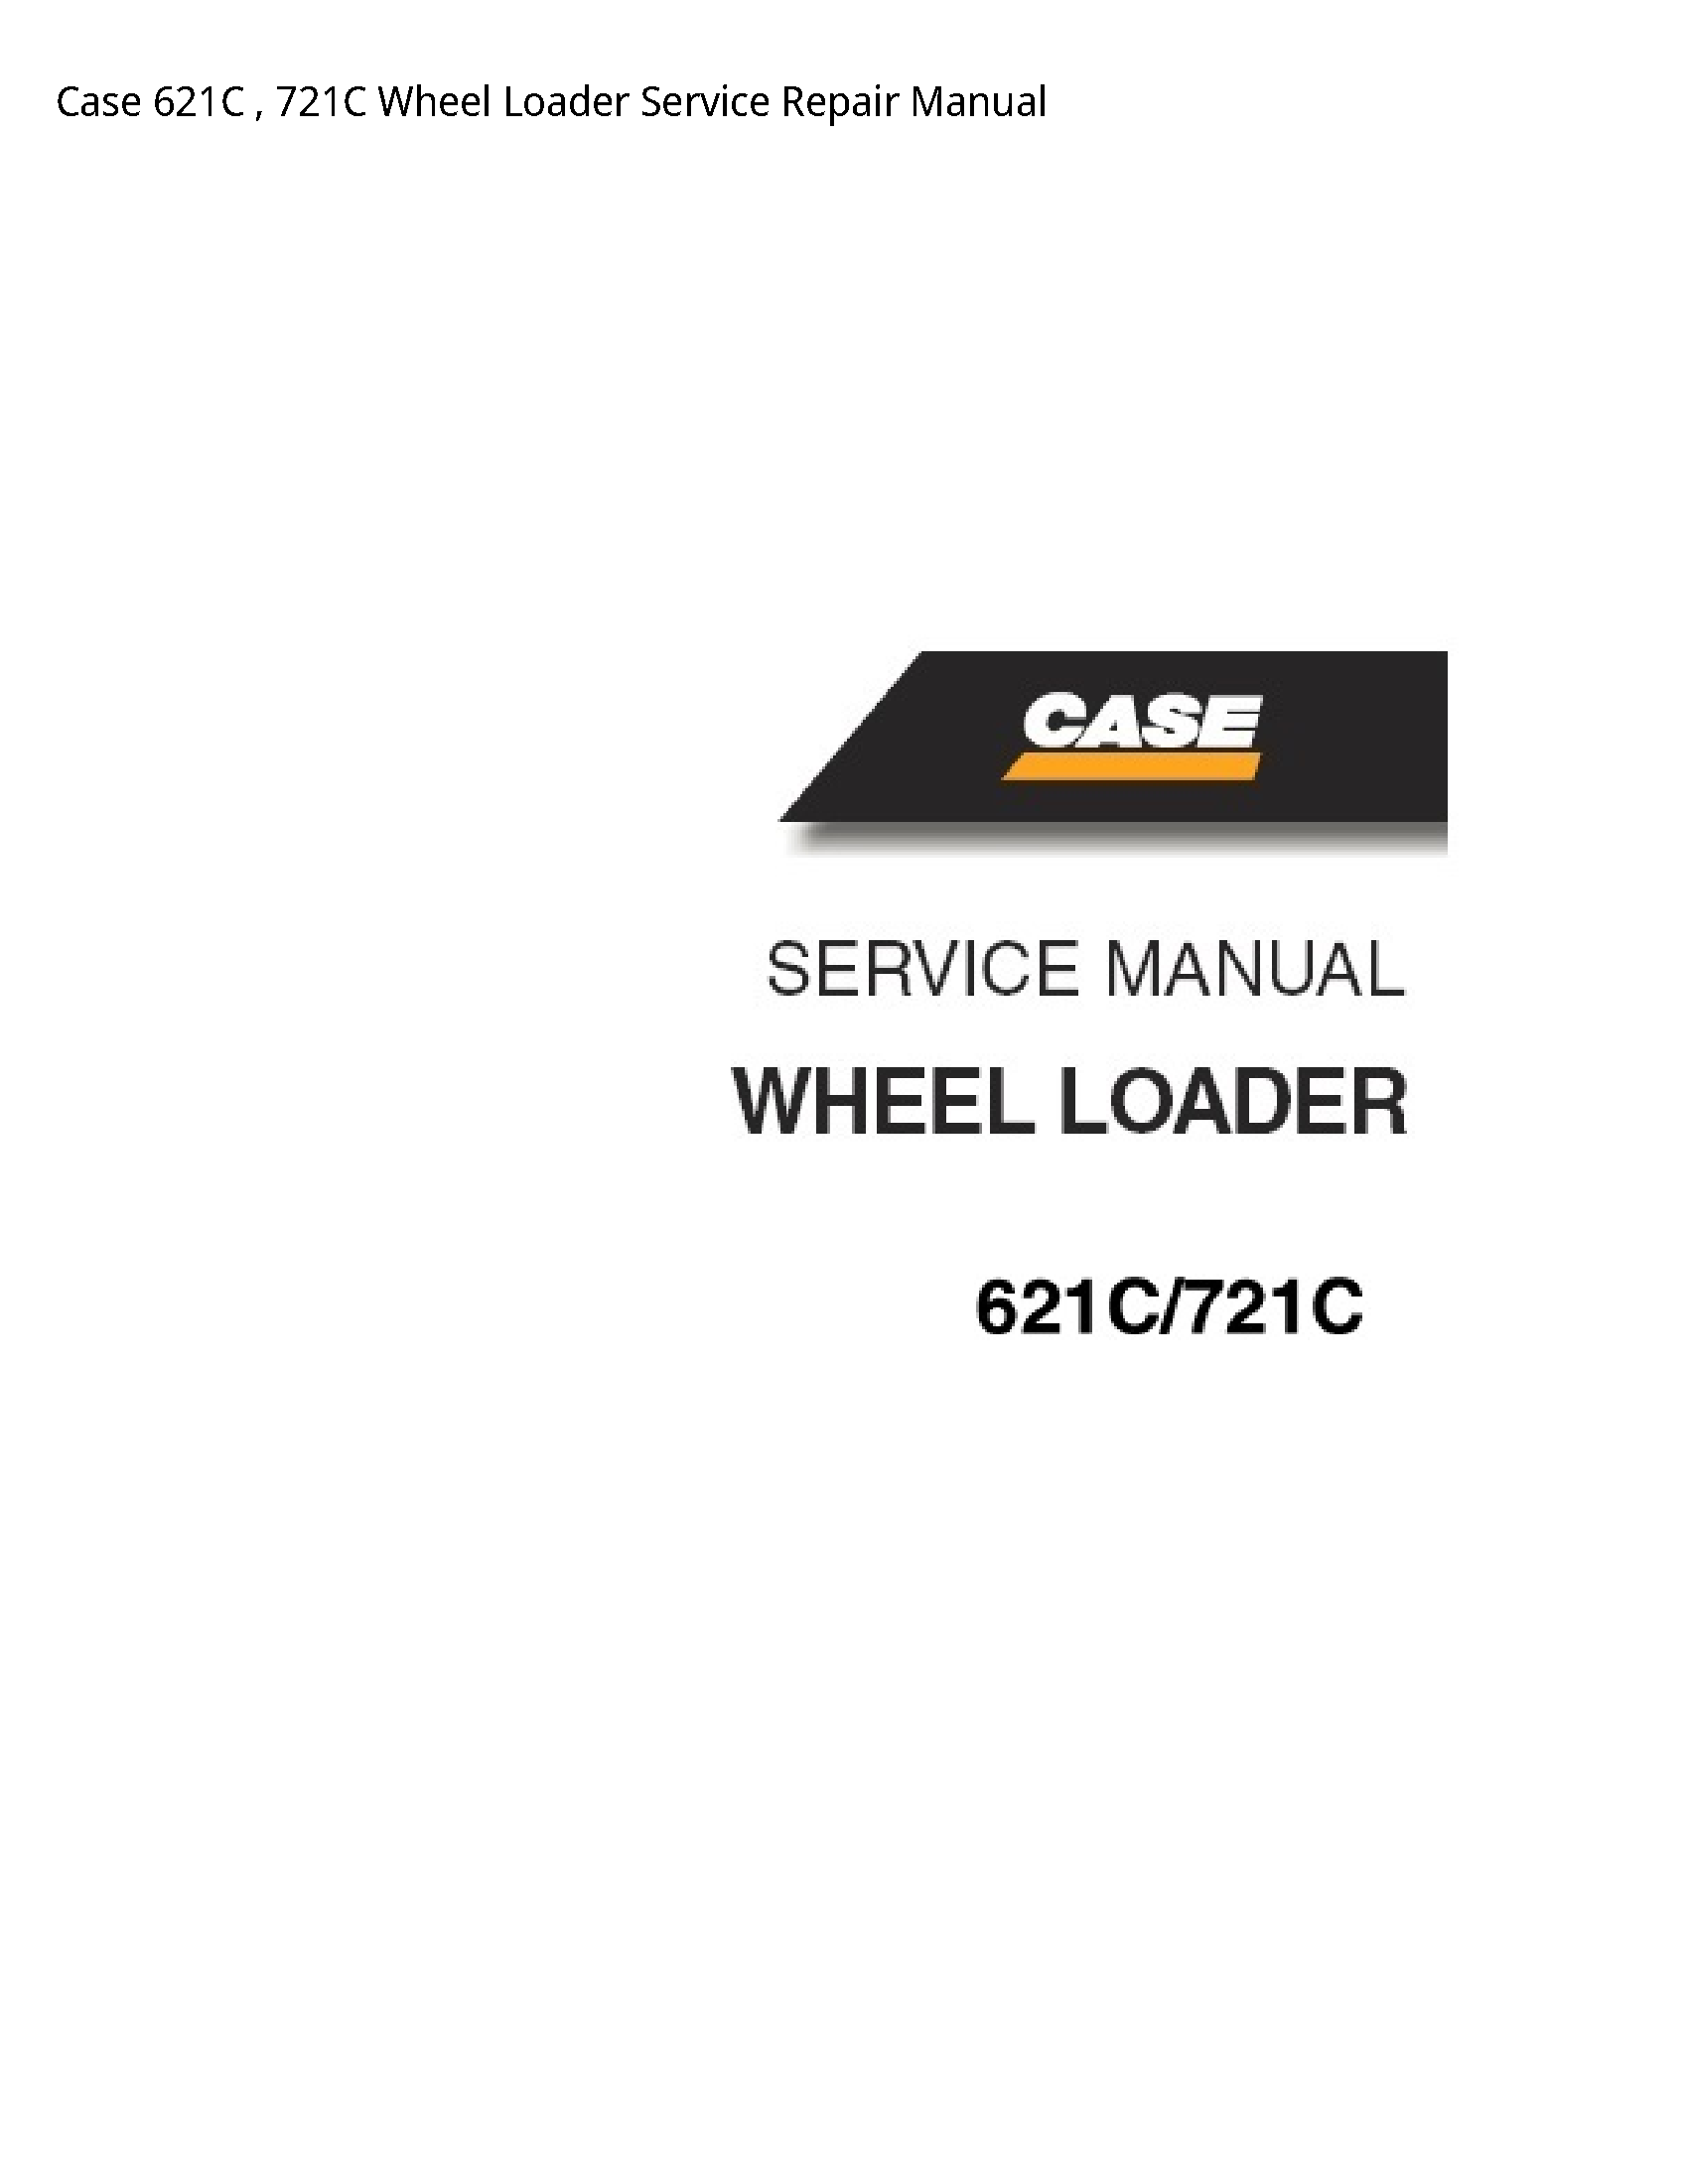 Case/Case IH 621C Wheel Loader manual